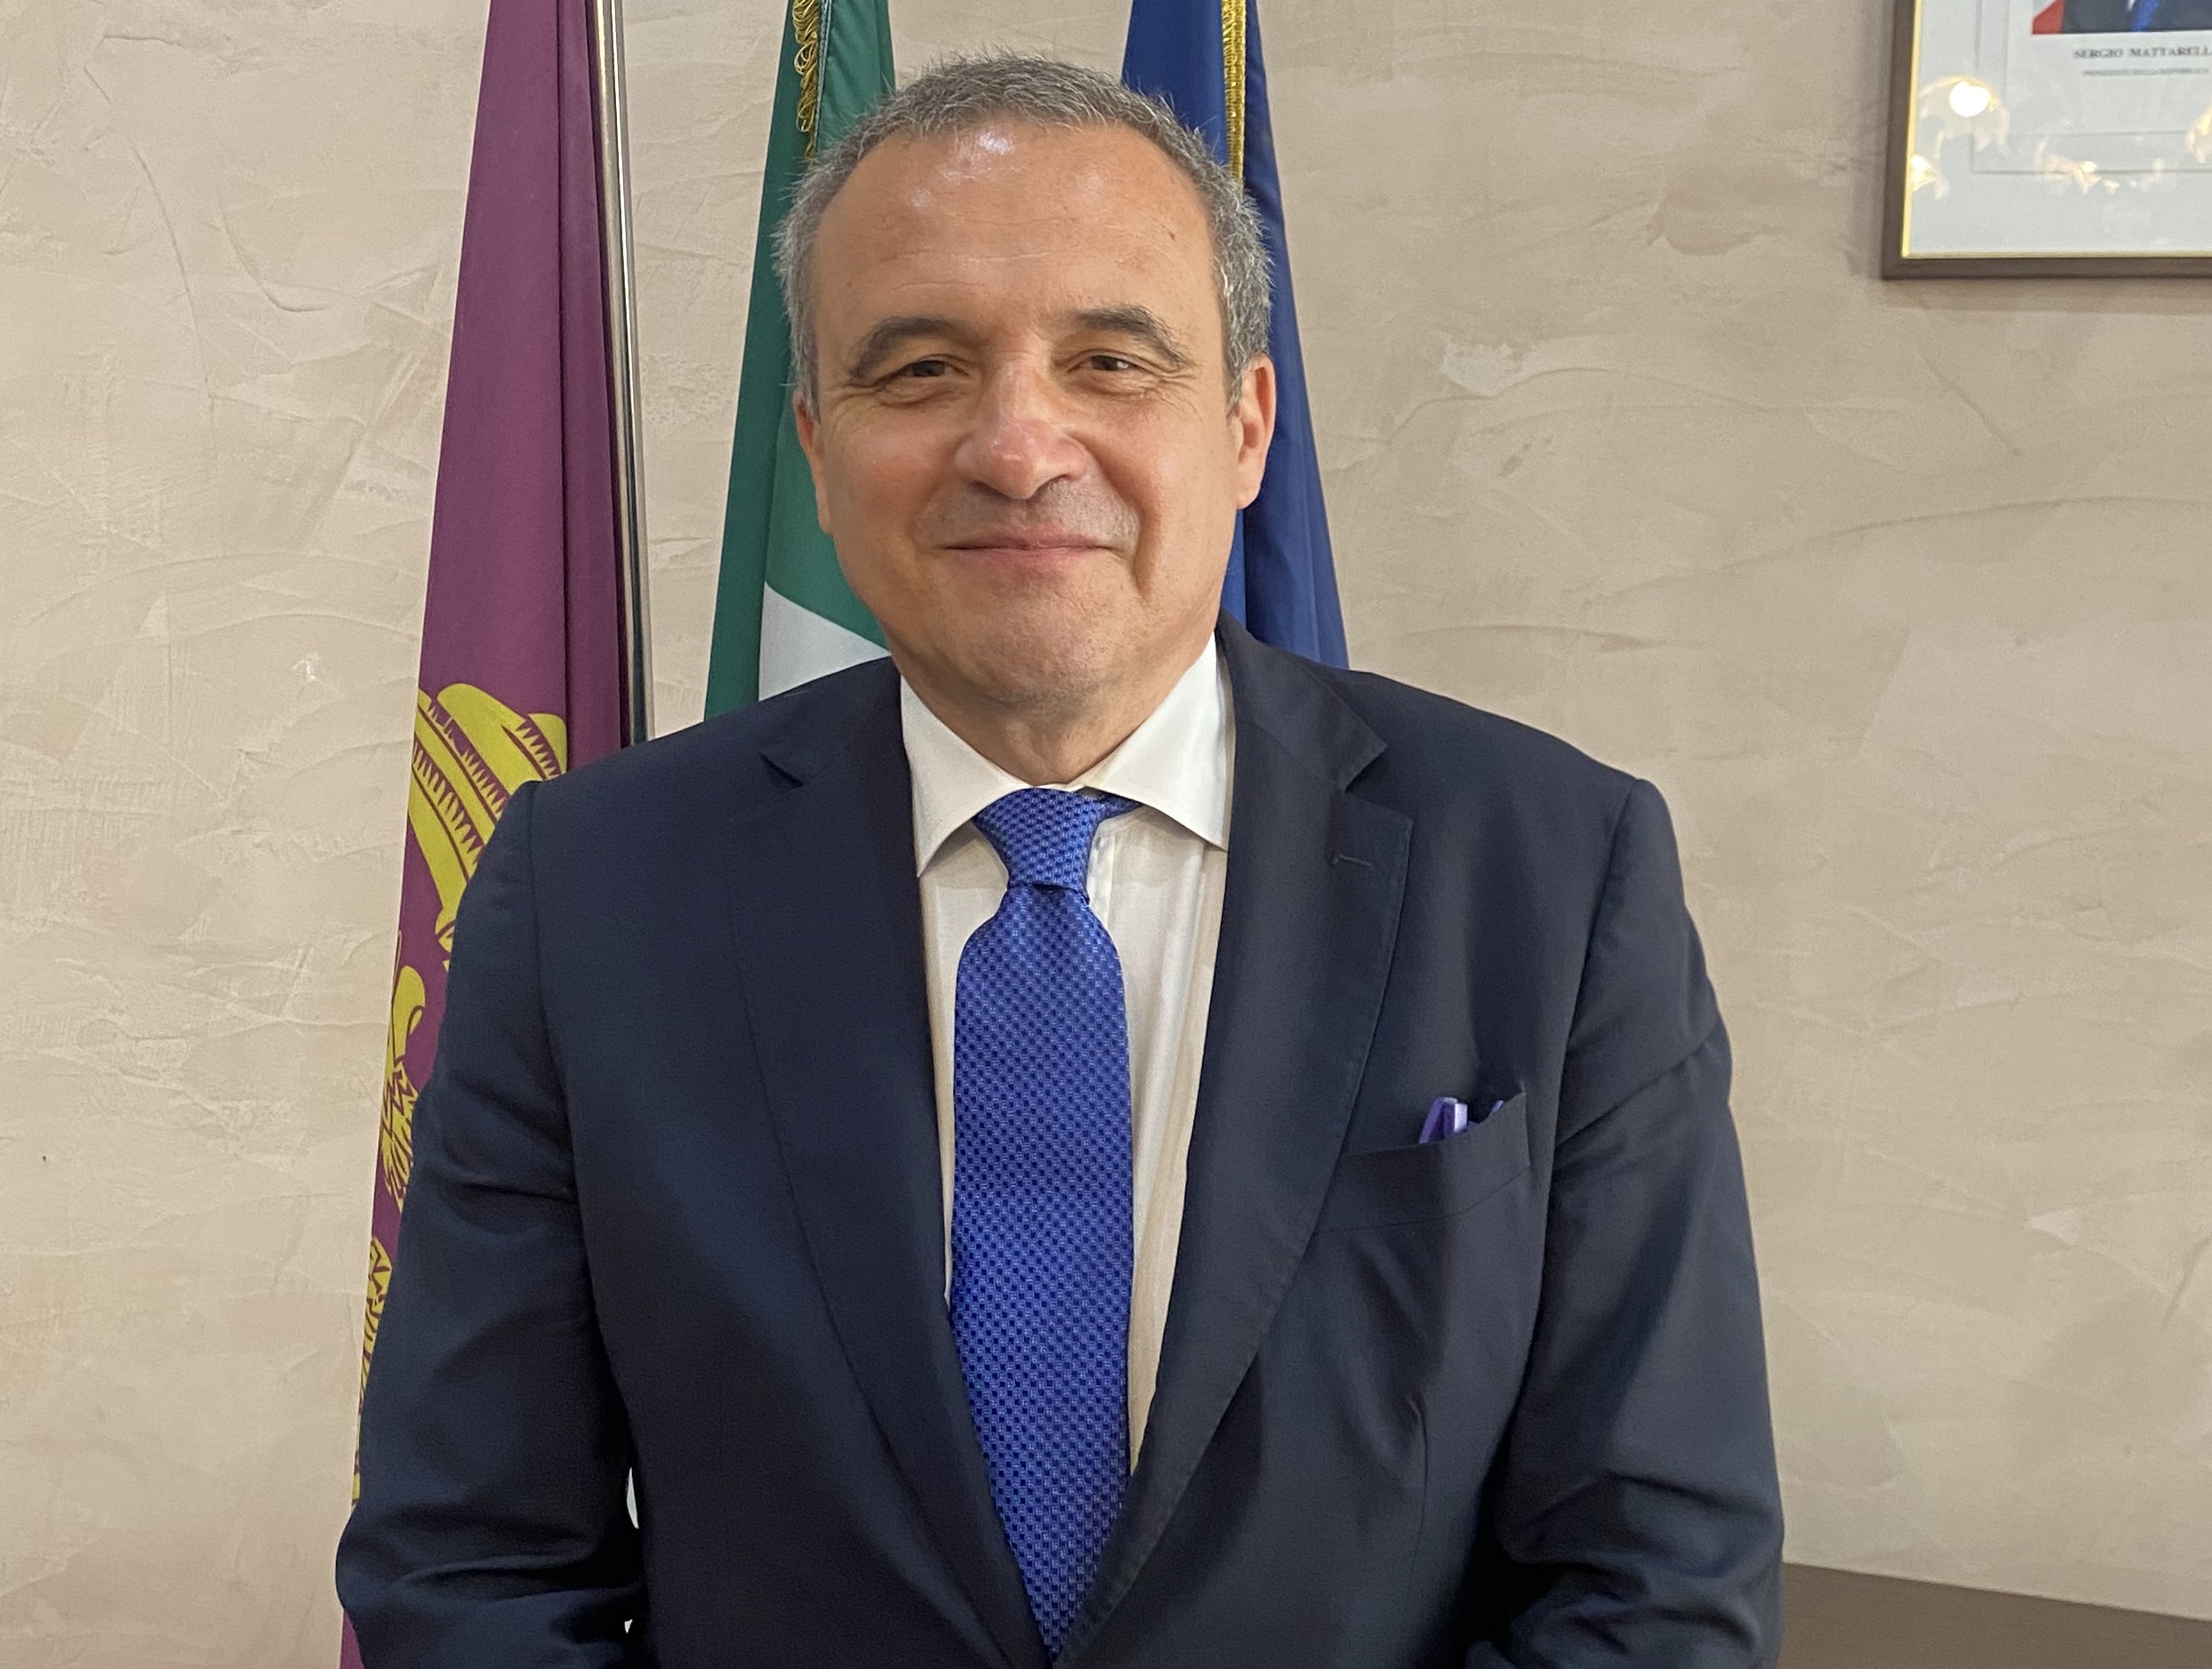 Fondi / Il Questore di Latina Fausto Vinci in città per incontrare il sindaco Beniamino Maschietto